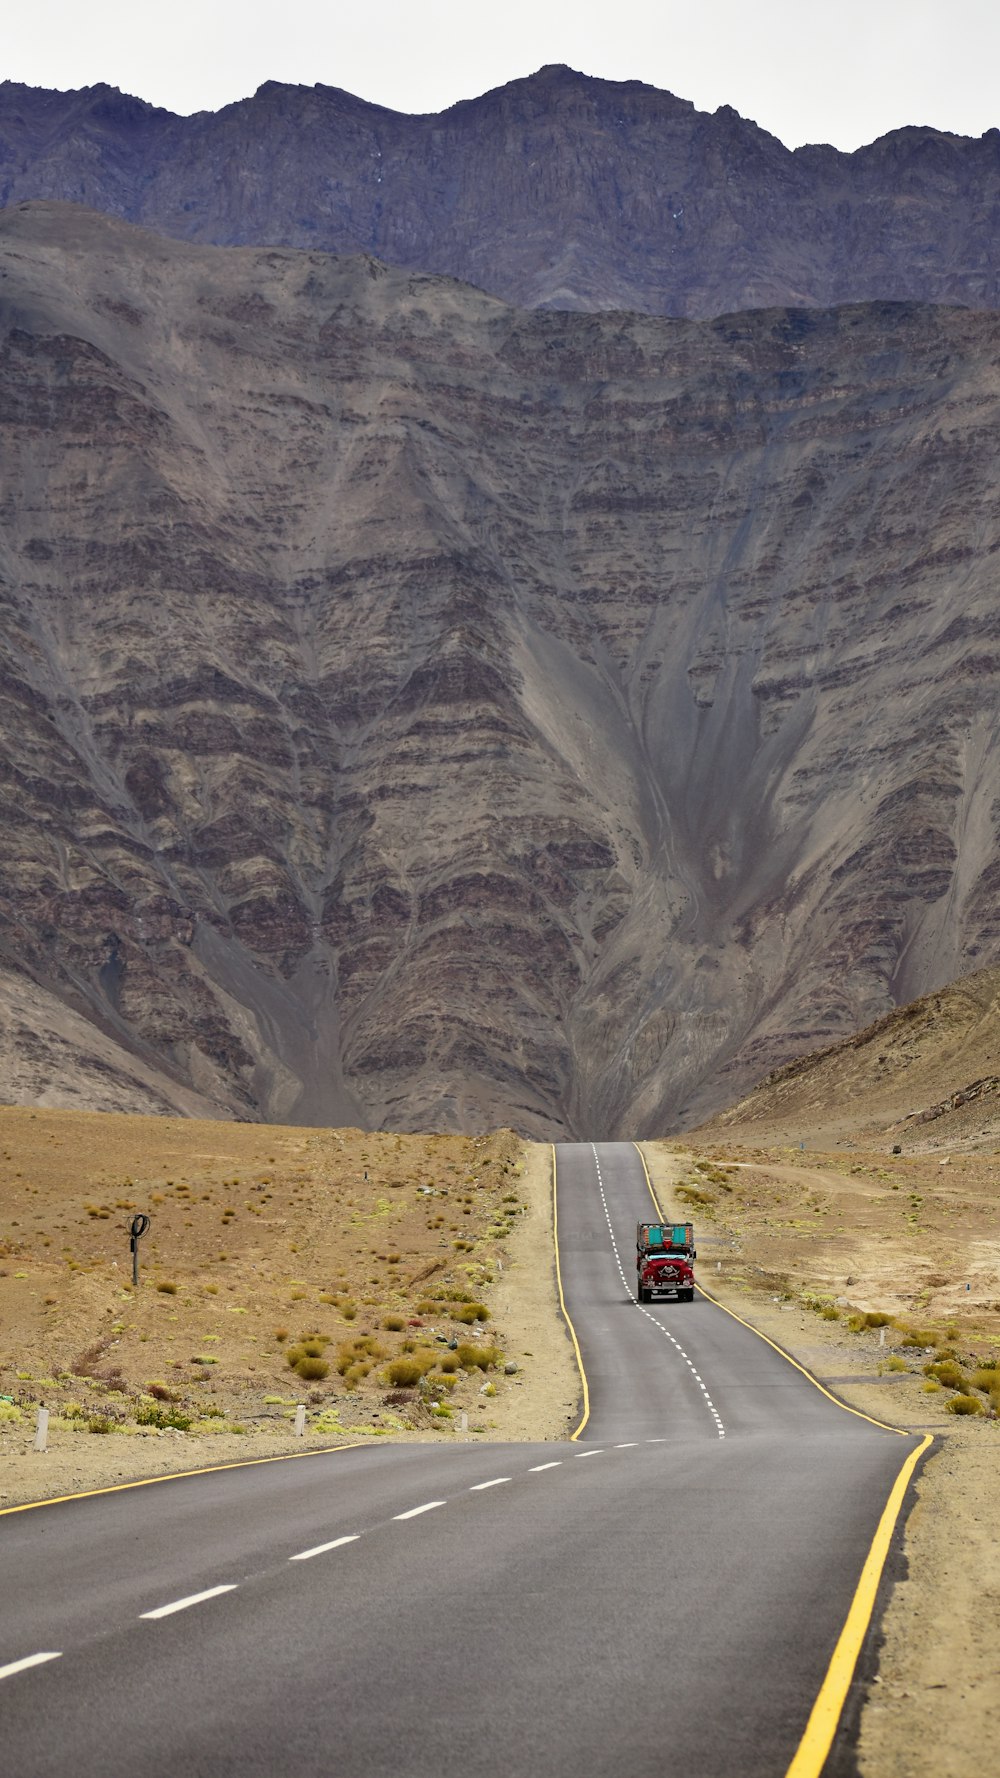 Un camion che percorre la strada di fronte a una montagna